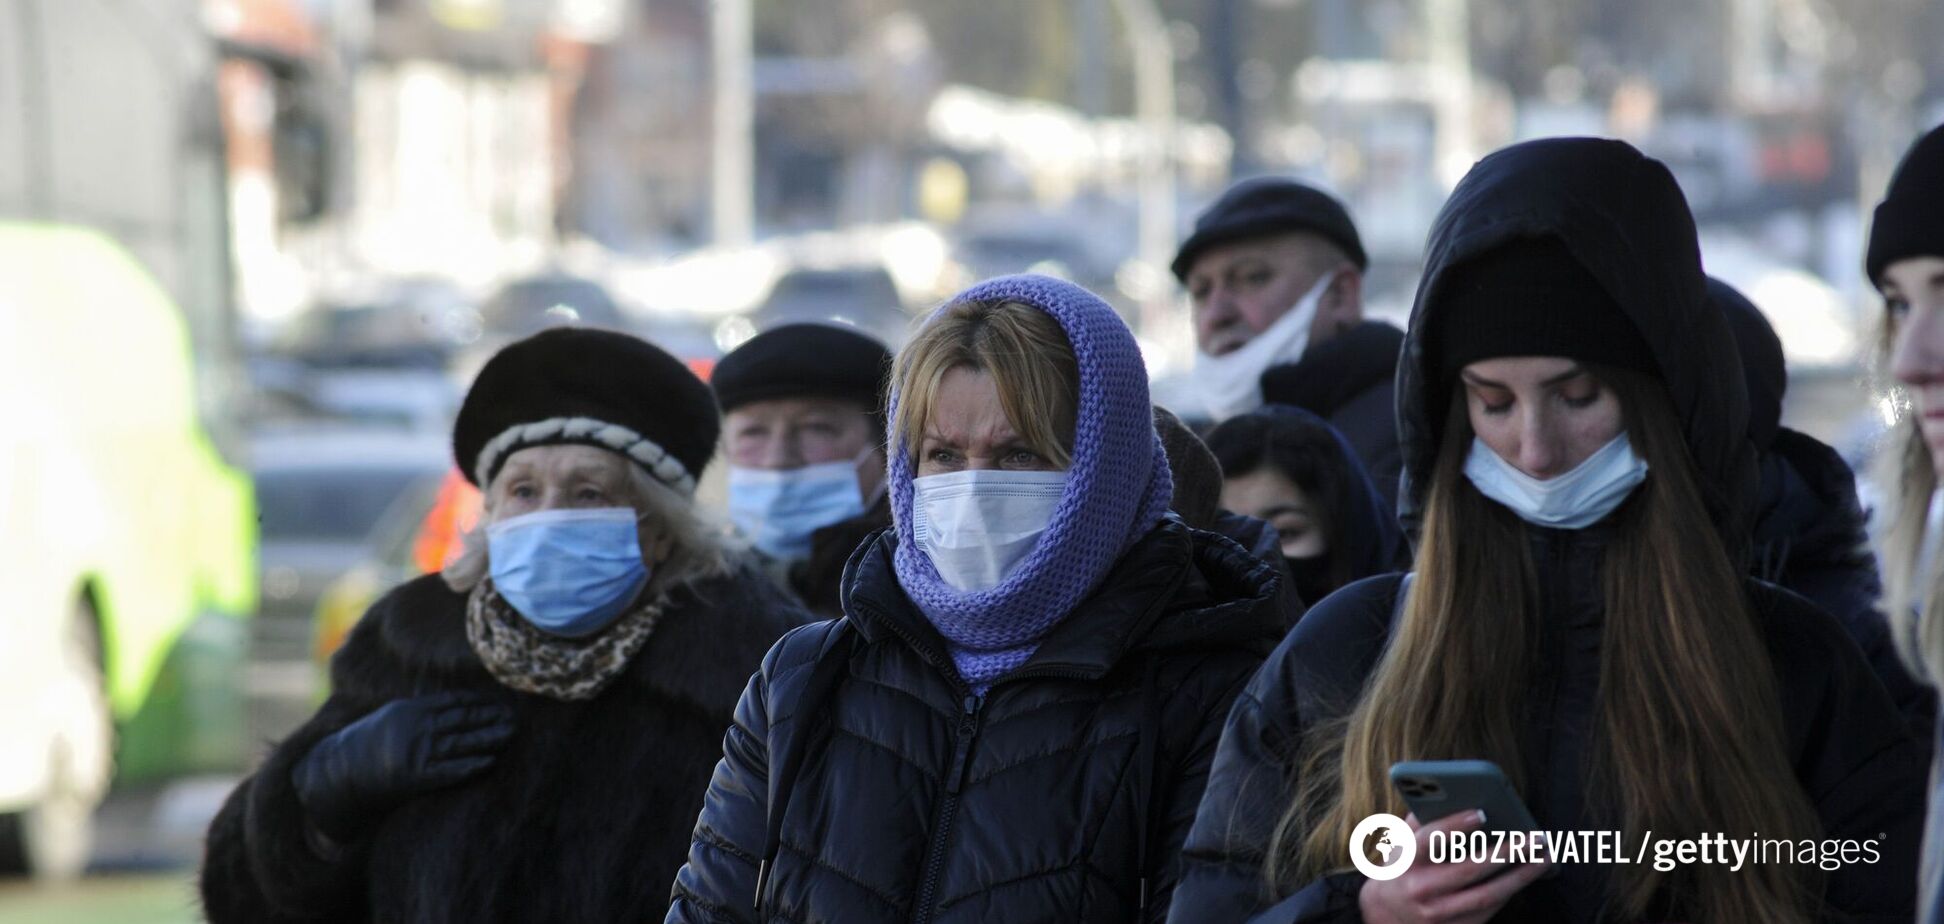 Статистика щодо коронавірусу в Києві